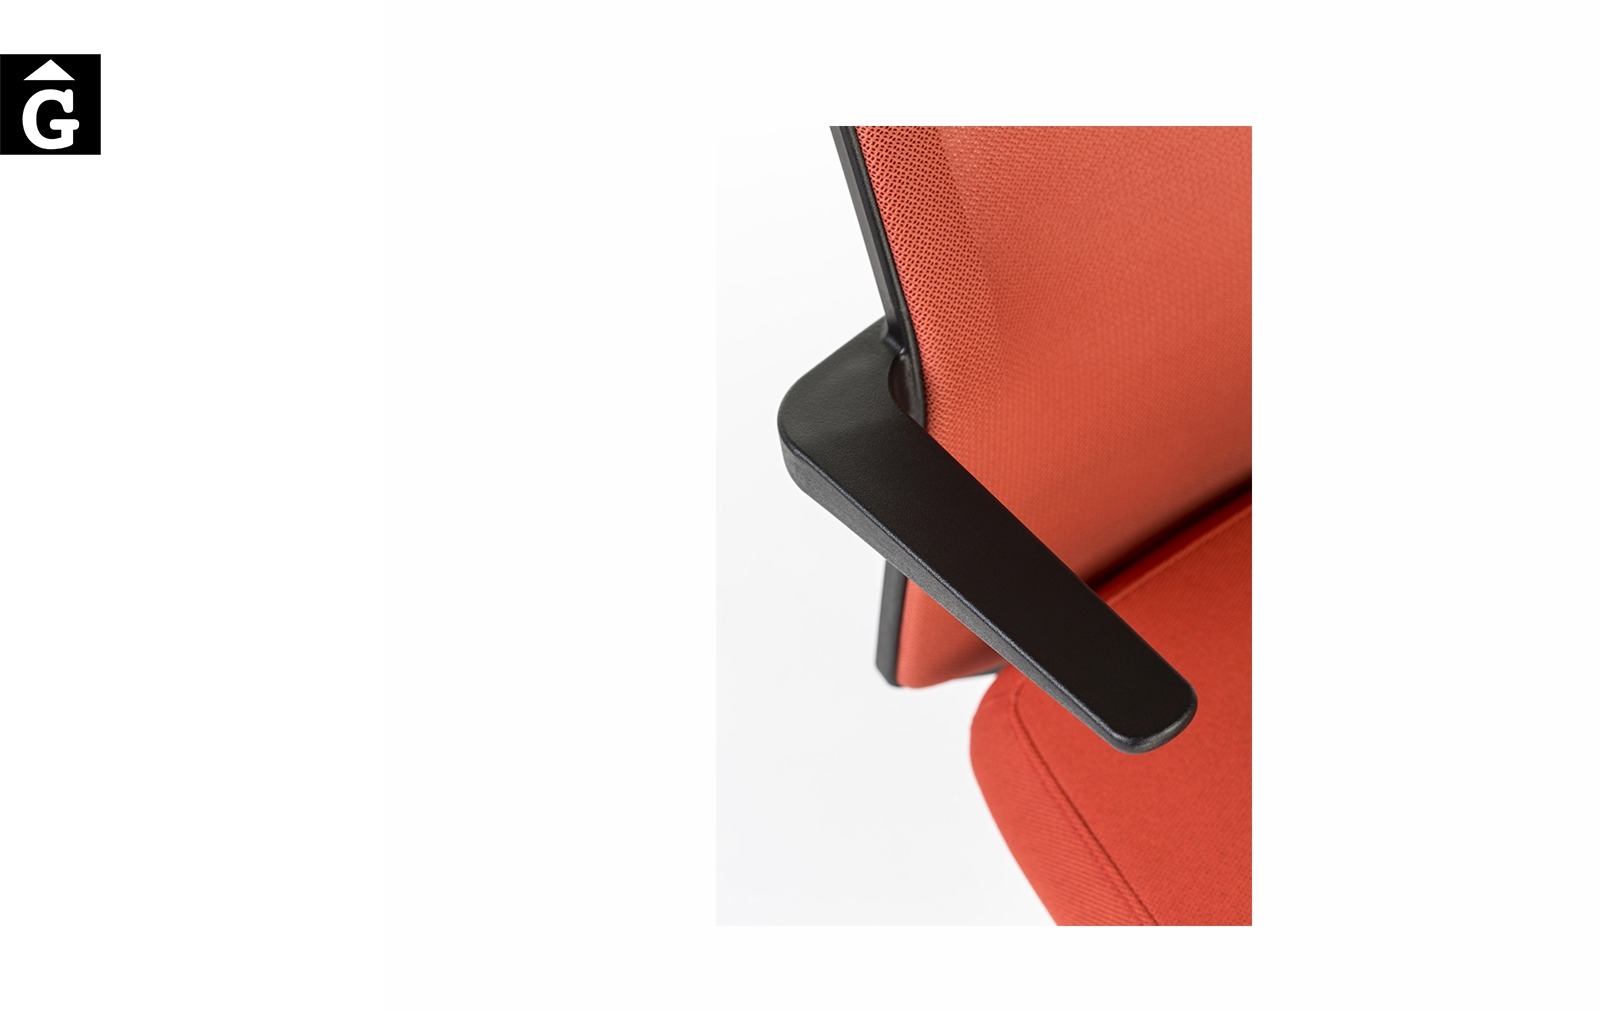 Cadira despatx Equis disseny Jorge Pensi | Detall braç | Dile | mobiliari d’oficina molt interessant | mobles Gifreu | botiga | Contract | Mobles nous oficina